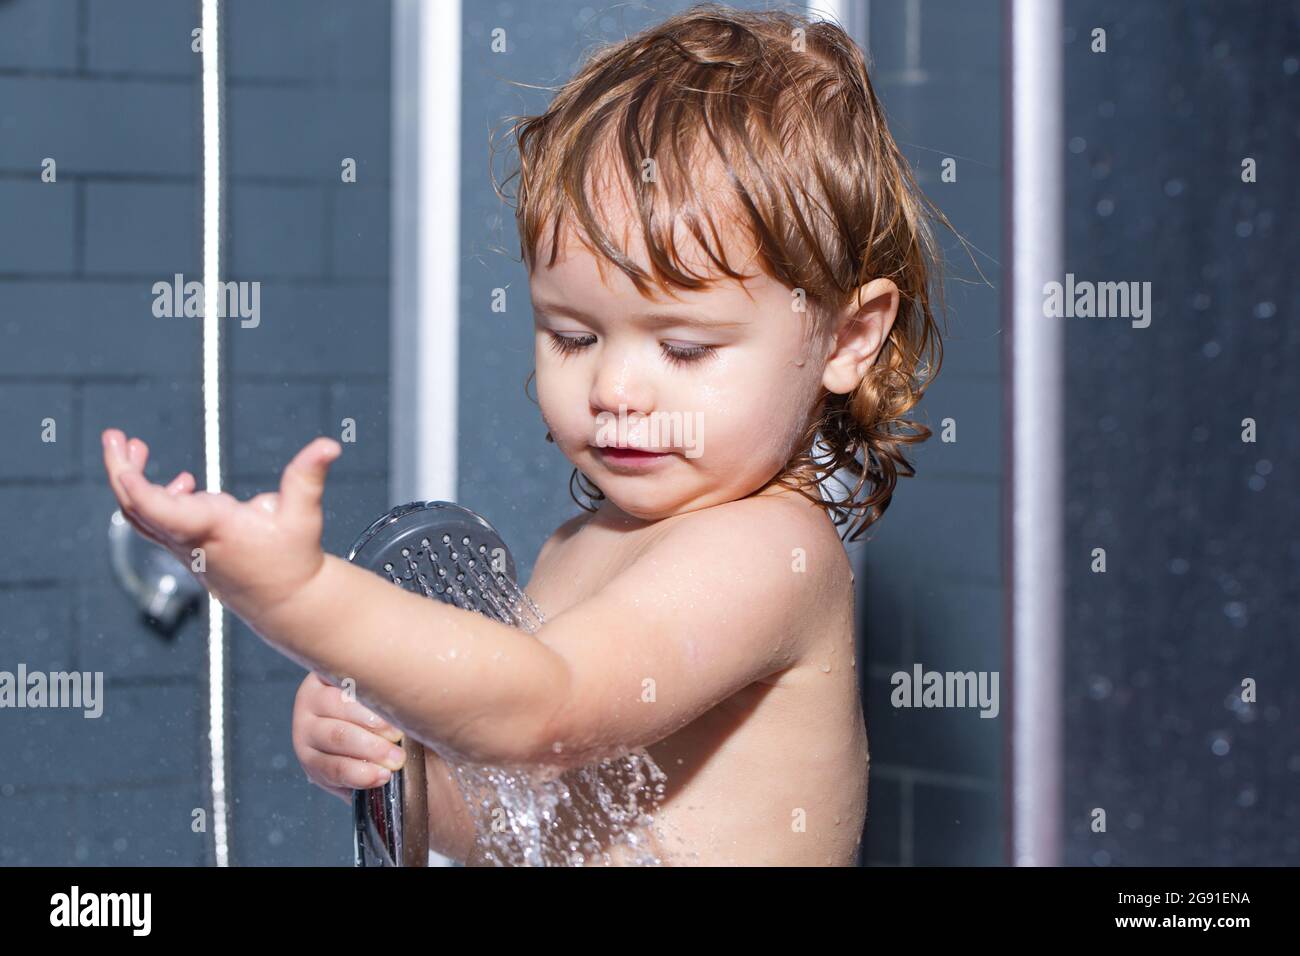 Laver les produits d'hygiène et de soins de santé pour nourrissons. Un petit enfant lave ses cheveux dans le bain Banque D'Images